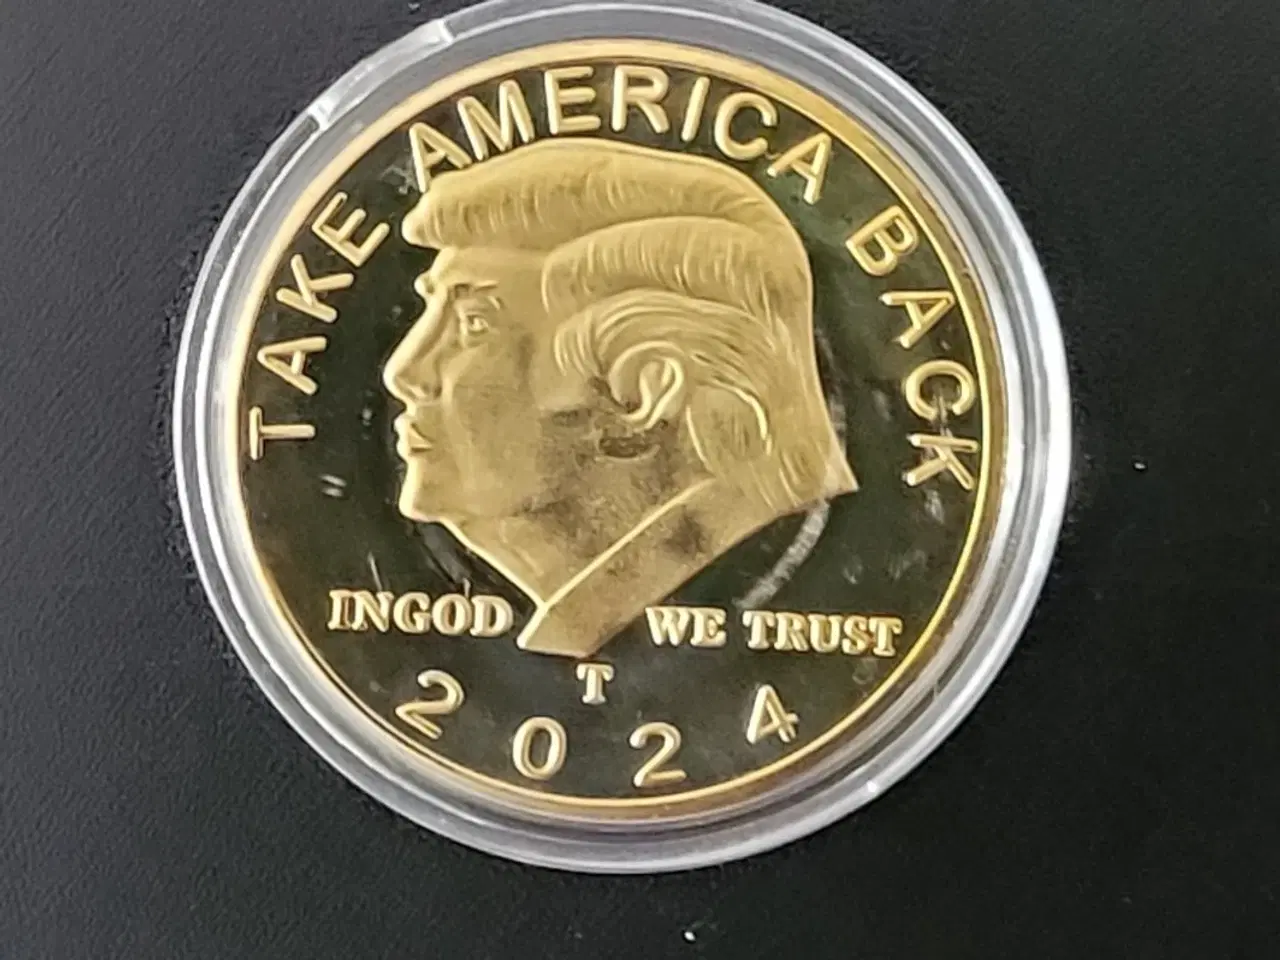 Billede 5 - USA Trump sæt kasket+flag+medalje+nøglering